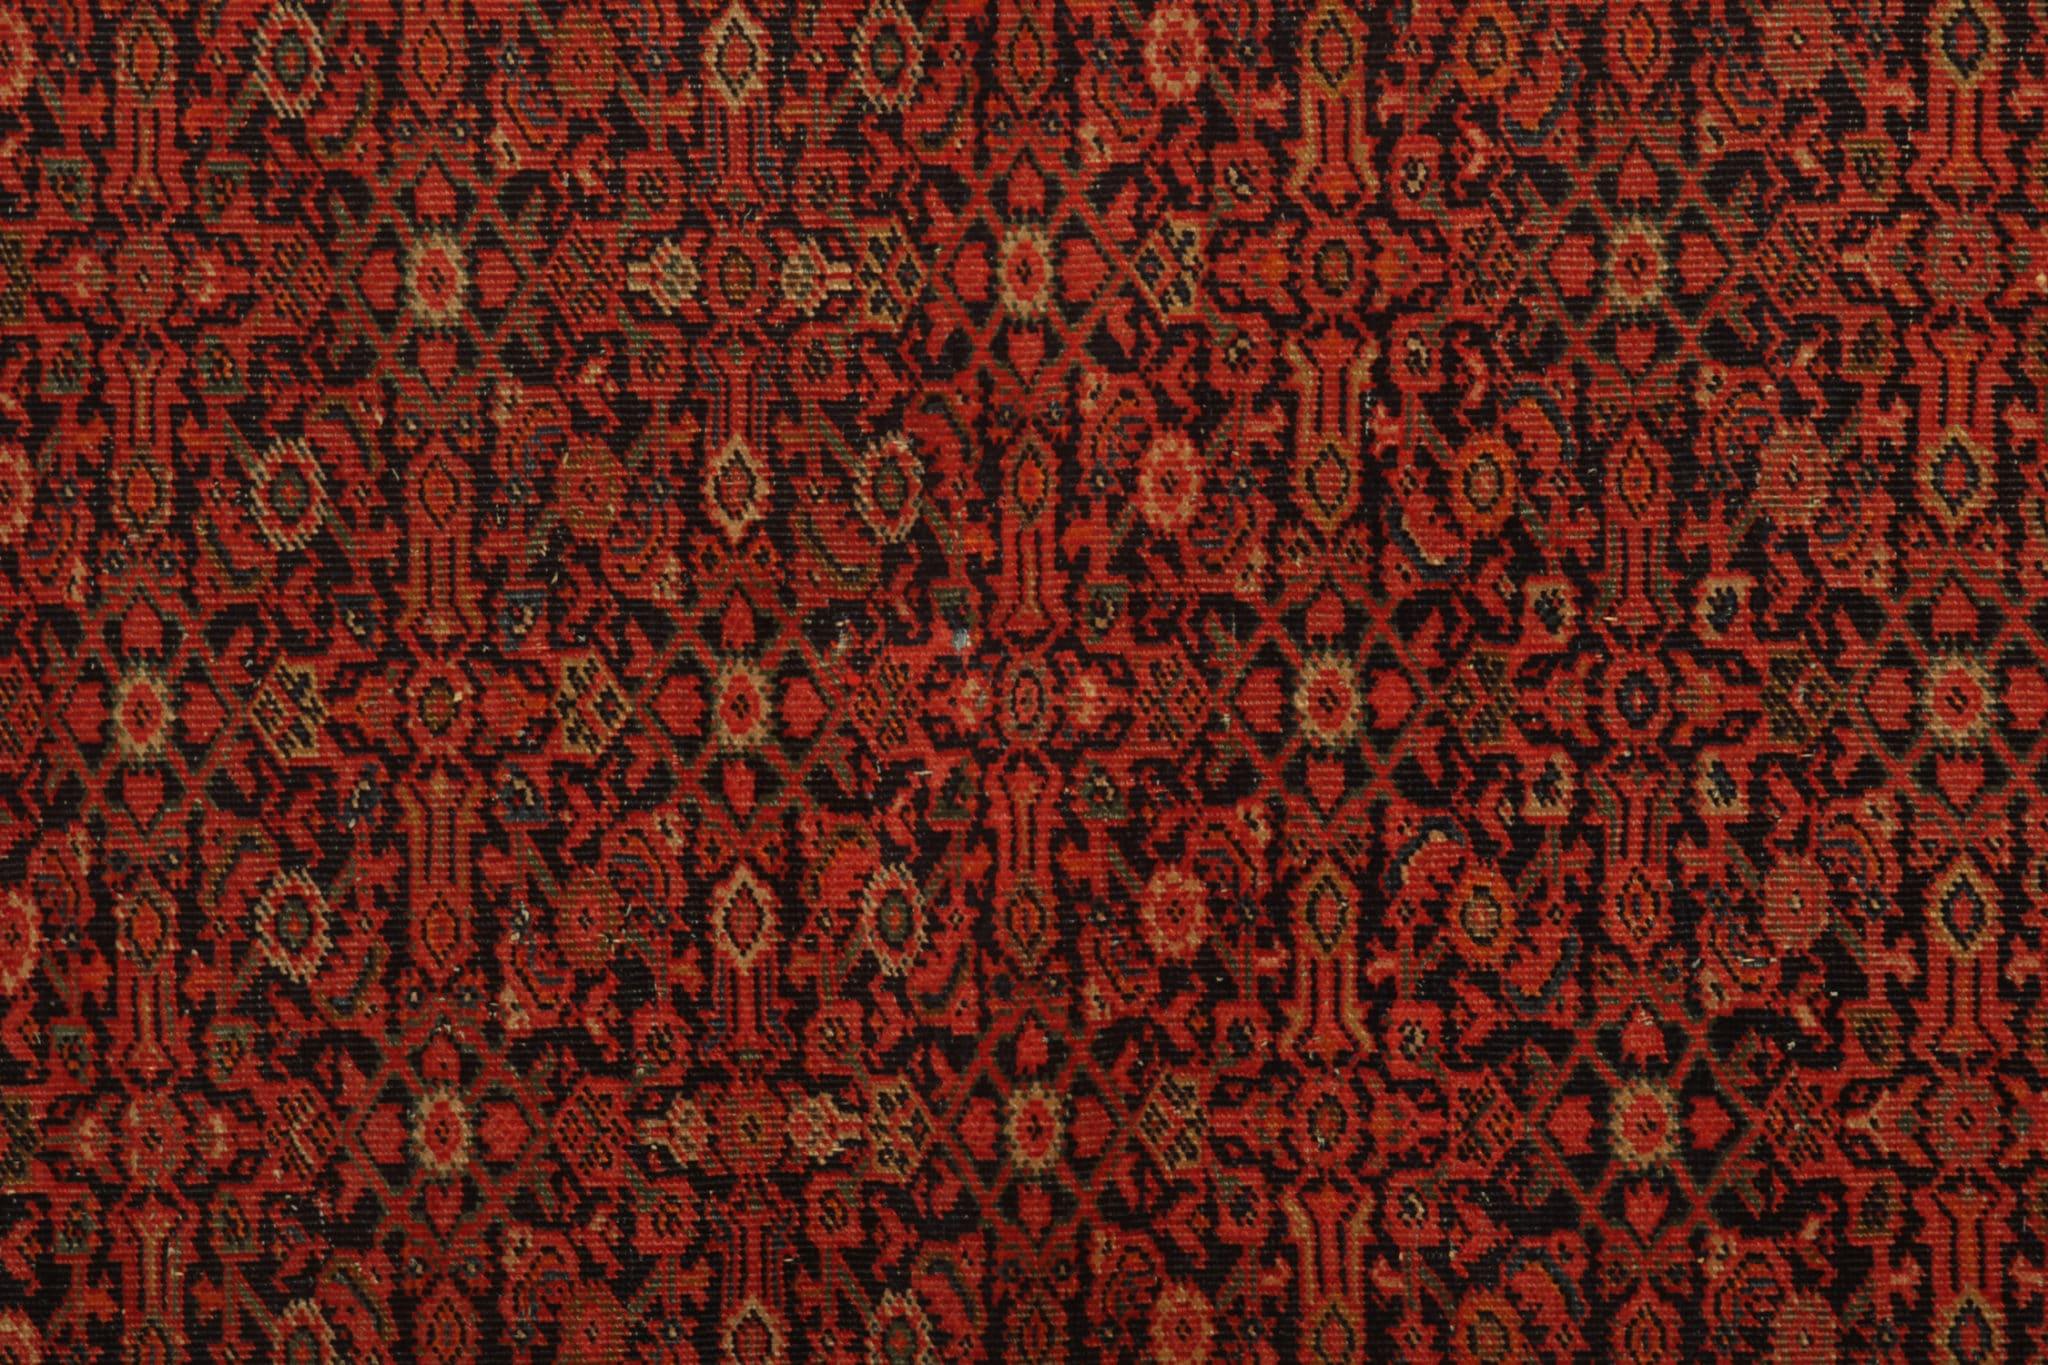 Dieser seltene antike Teppich ist ein zeitloser Schatz, der in den 1880er Jahren in sorgfältiger Handarbeit hergestellt wurde. Das exquisite Geflecht zeigt die Kunst des Handknüpfens und garantiert Langlebigkeit und unübertroffene Qualität. Dieser